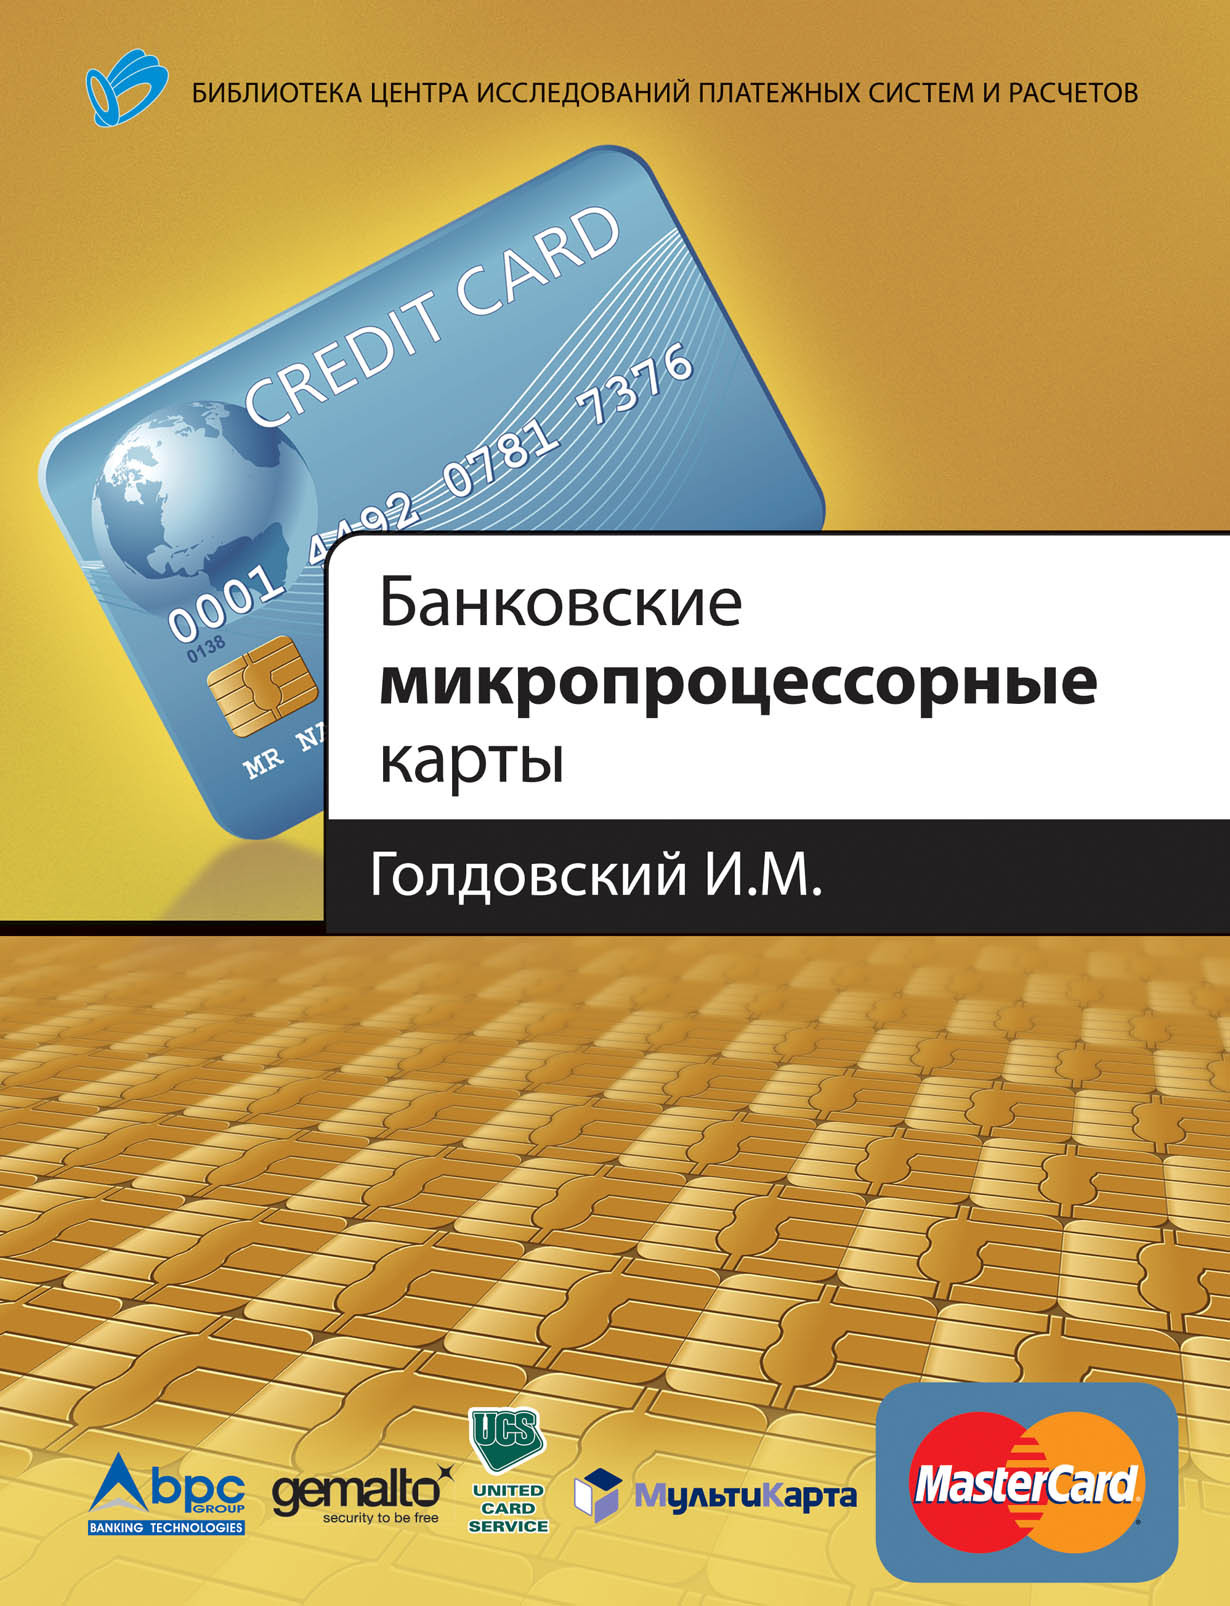 Банковские микропроцессорные карты обложка.